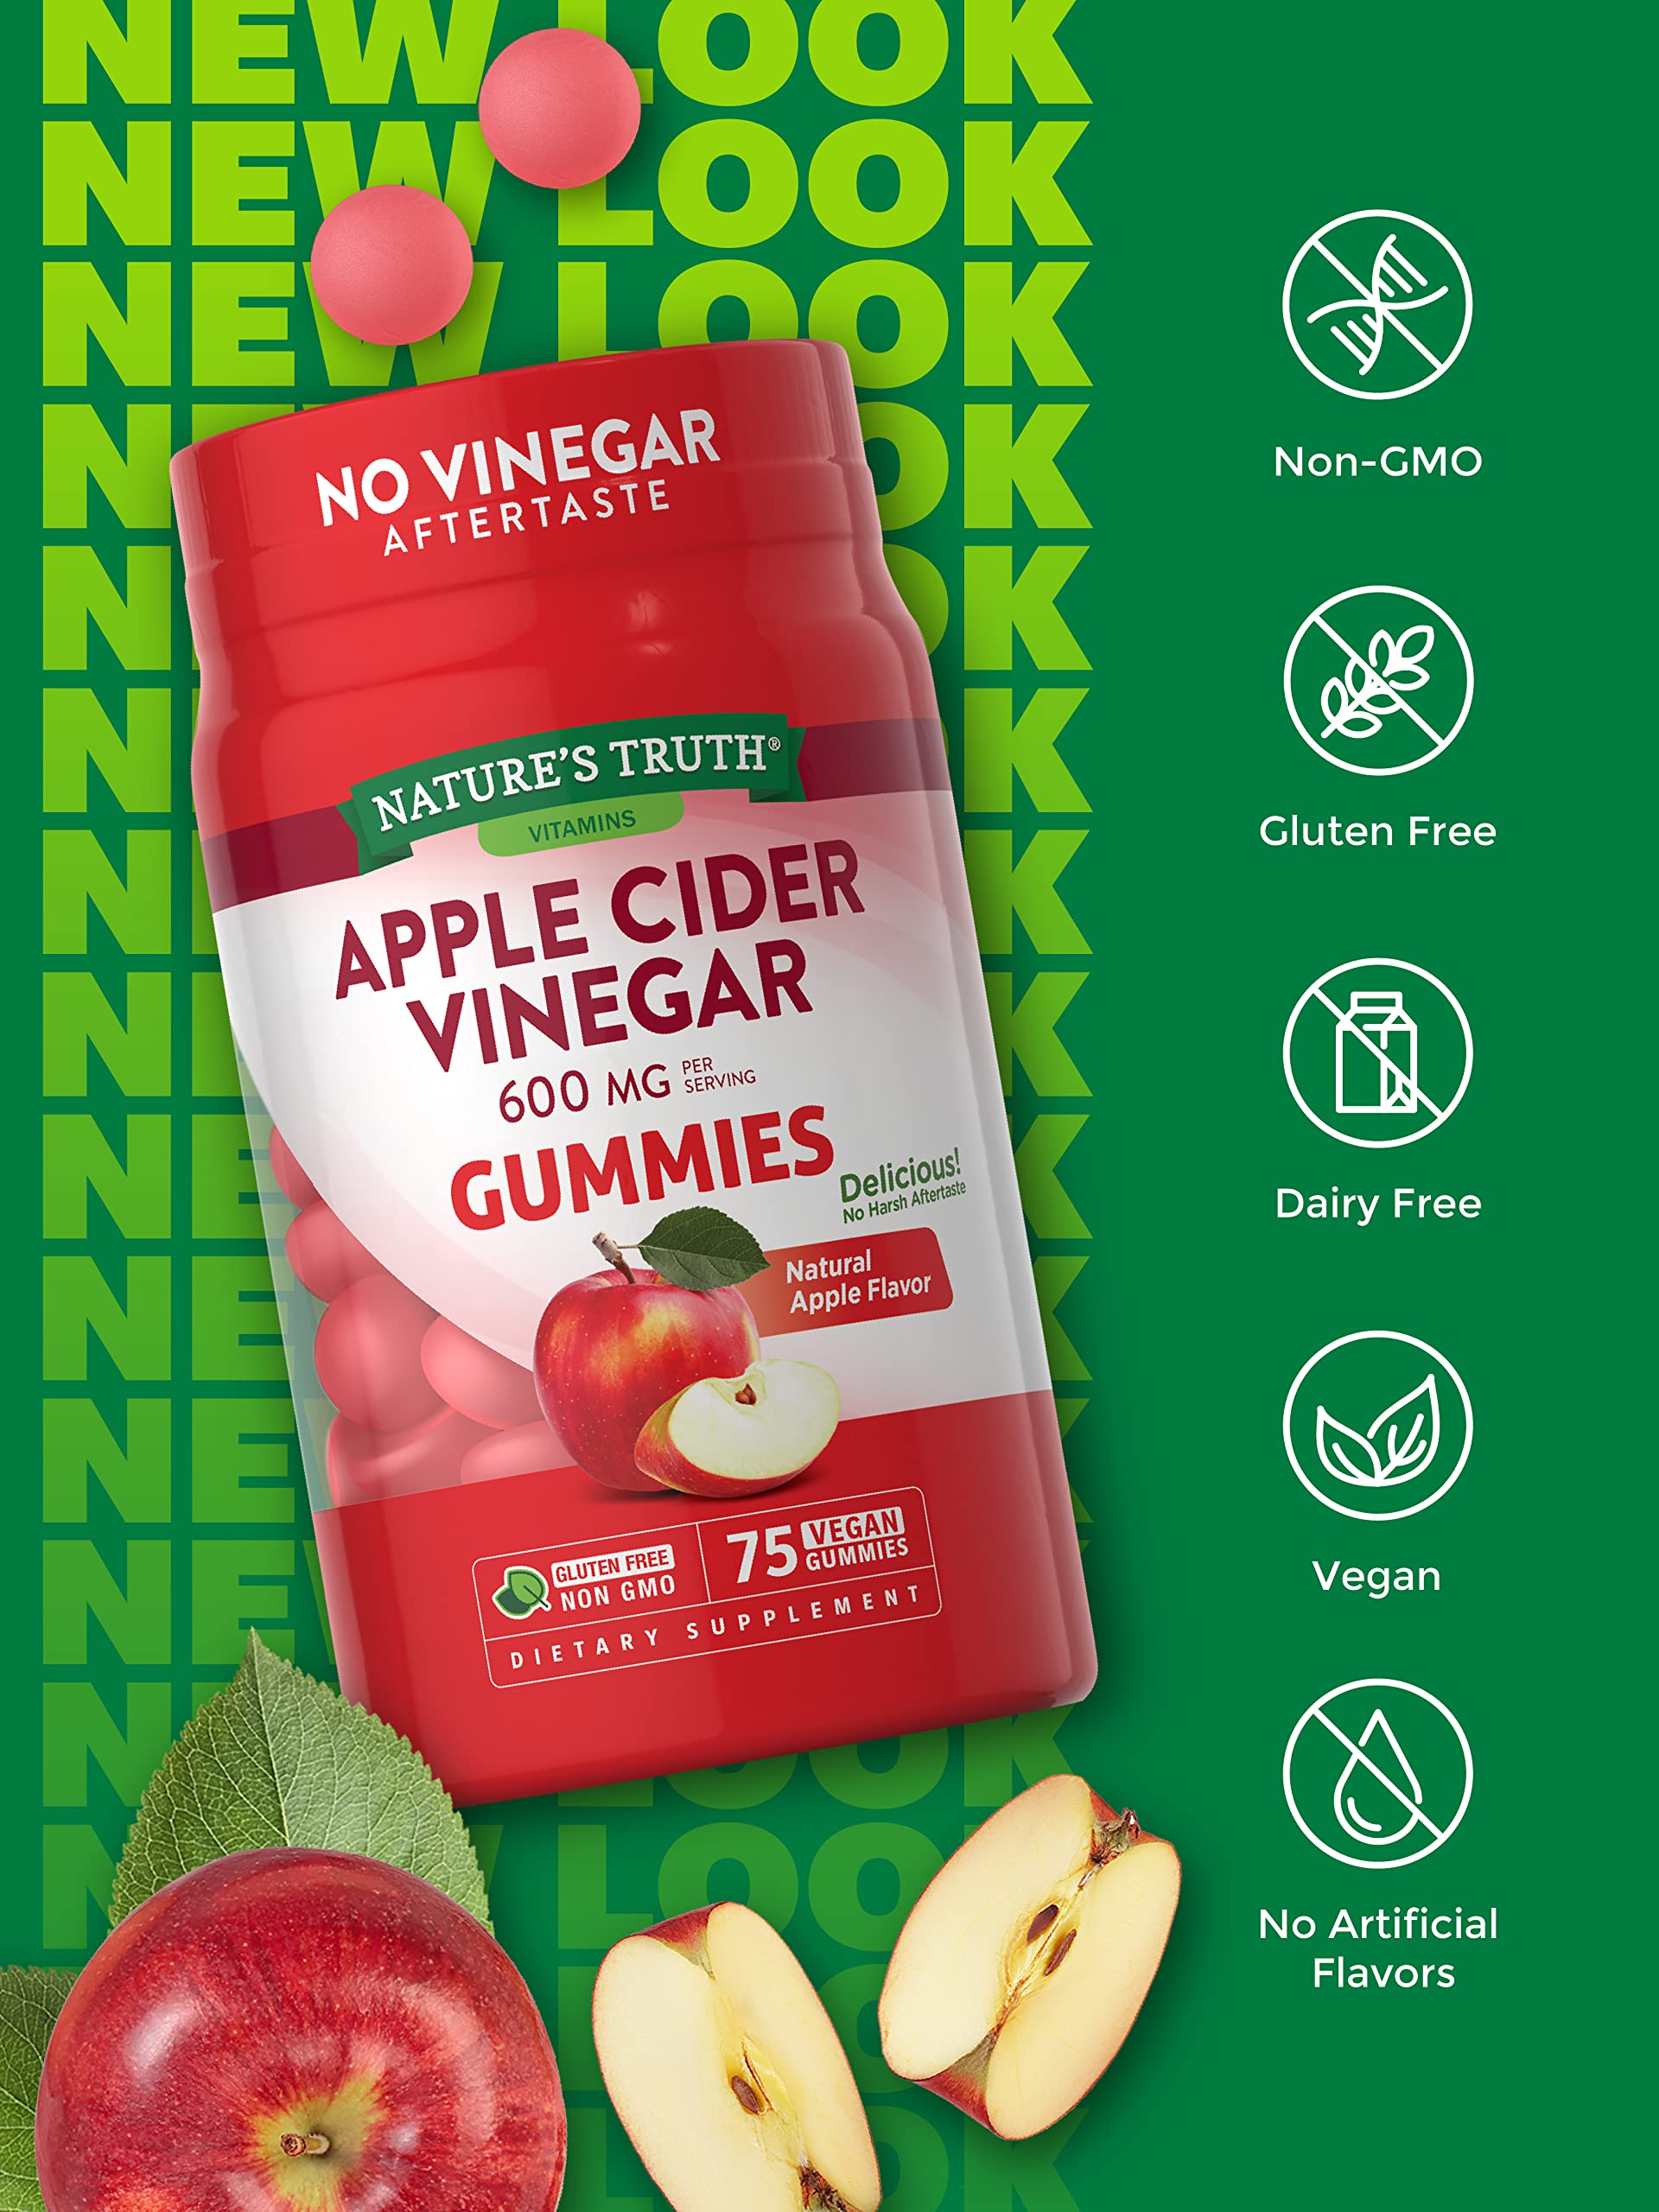 Nature's Truth Apple Cider Vinegar Gummies | 600 mg | 75 Gummies | Natural Apple Flavor | Vegan, Non-GMO, Gluten Free Supplement